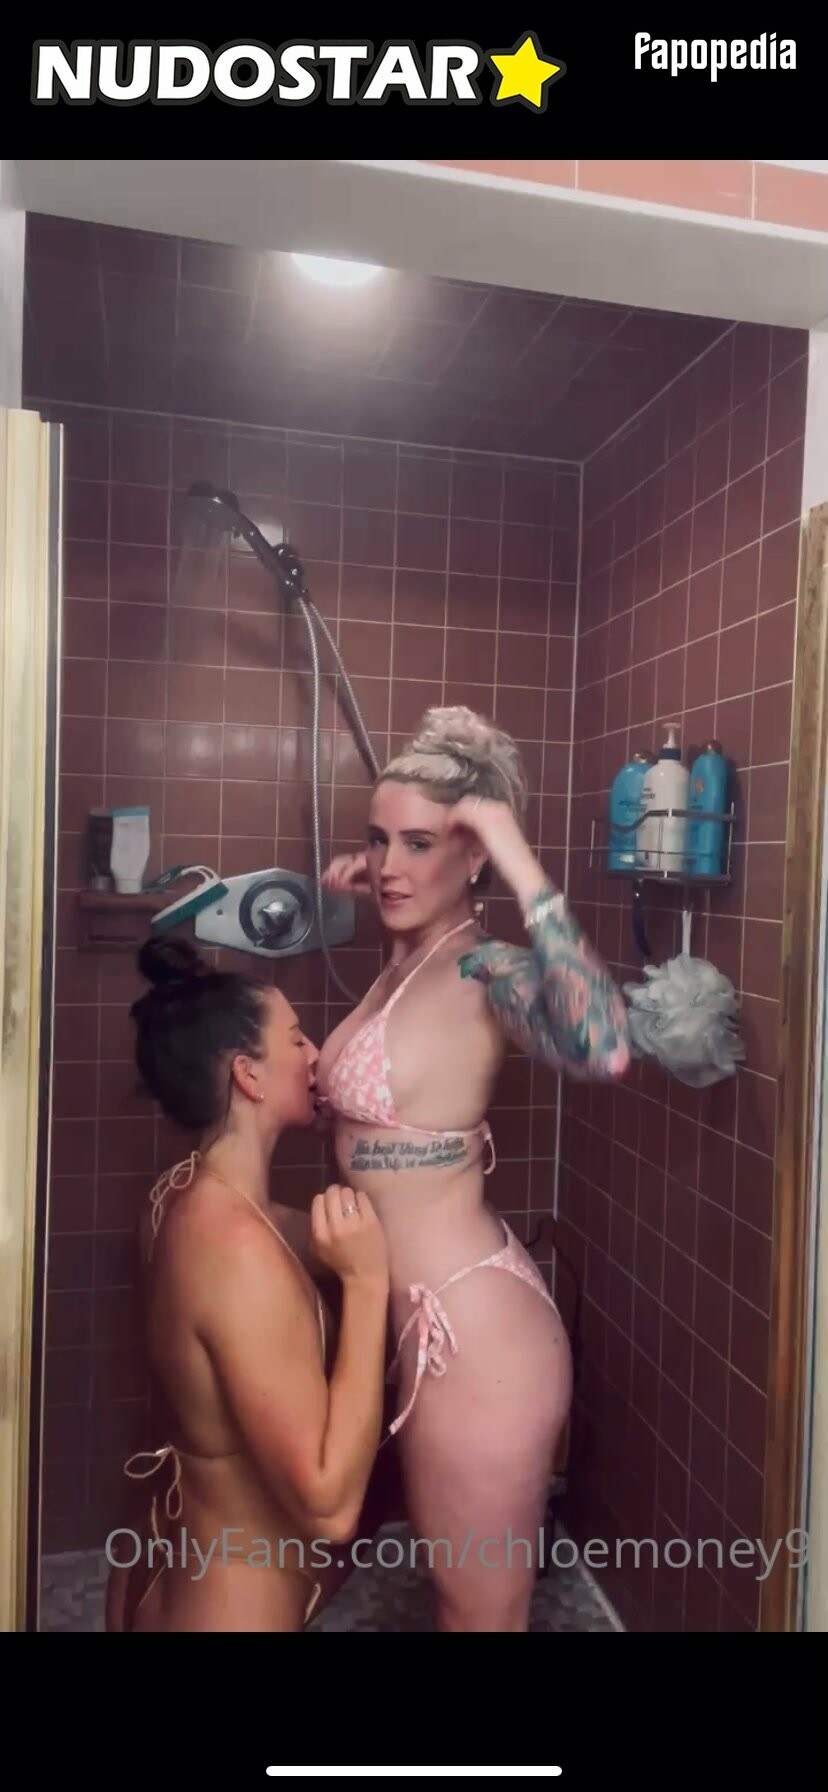 Chloemoney9 Nude OnlyFans Leaks